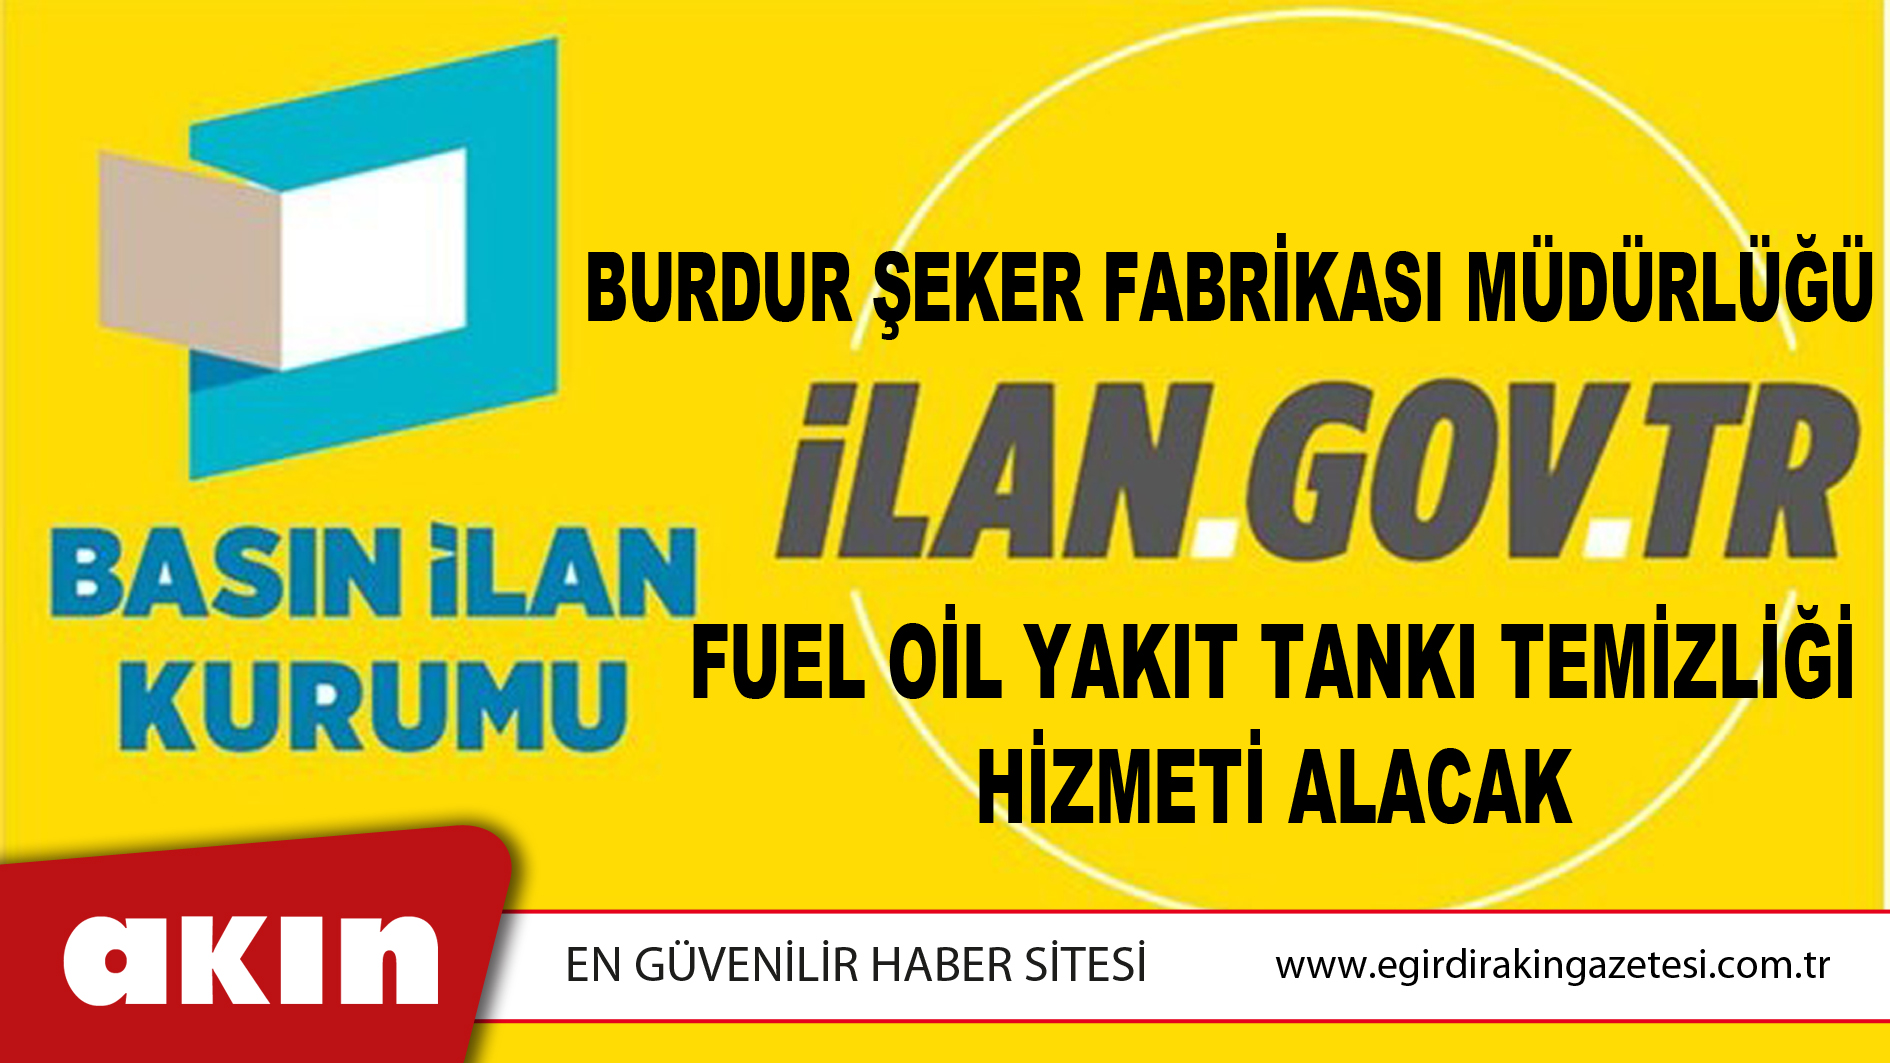 Burdur Şeker Fabrikası Müdürlüğü Fuel Oil Yakıt Tankı Temizliği Hizmeti Alacak